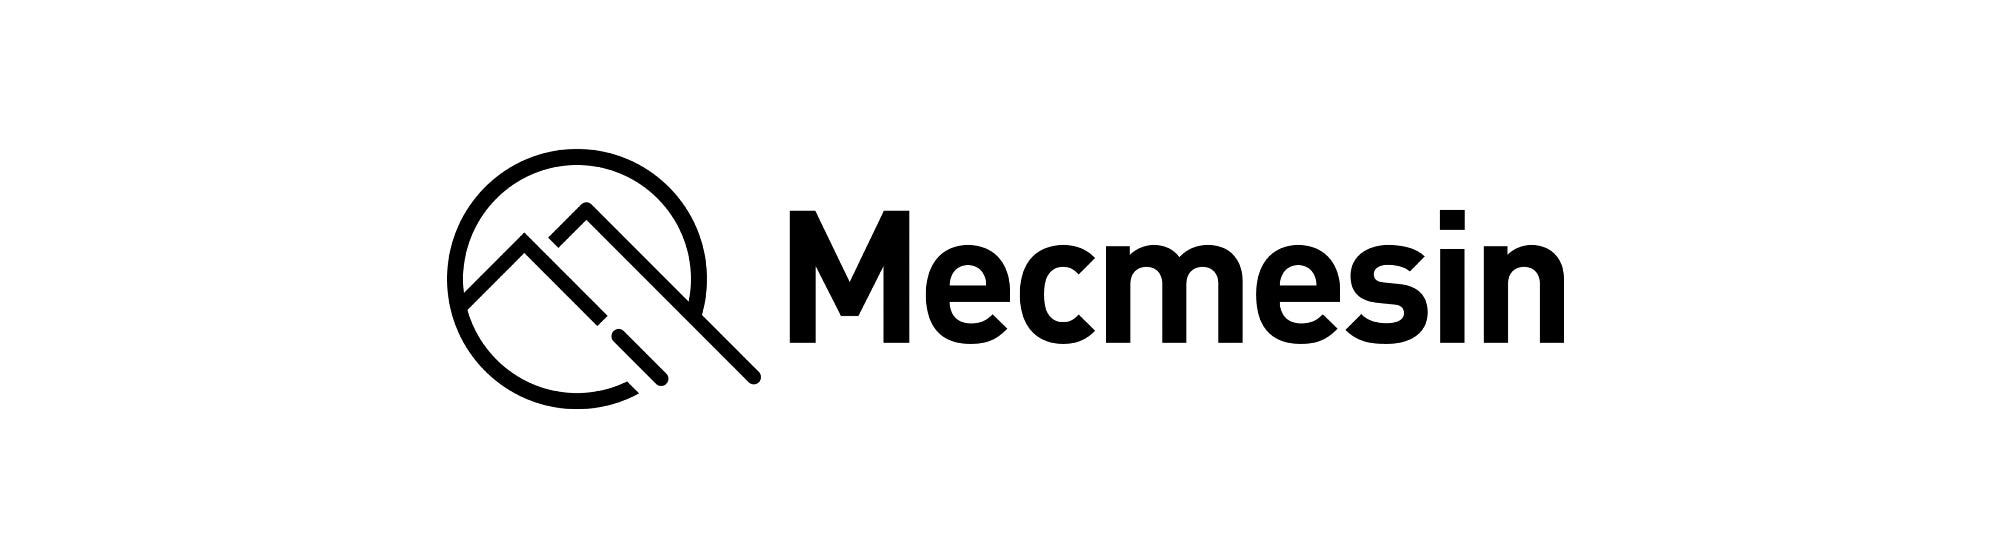 Mecmesin Ltd